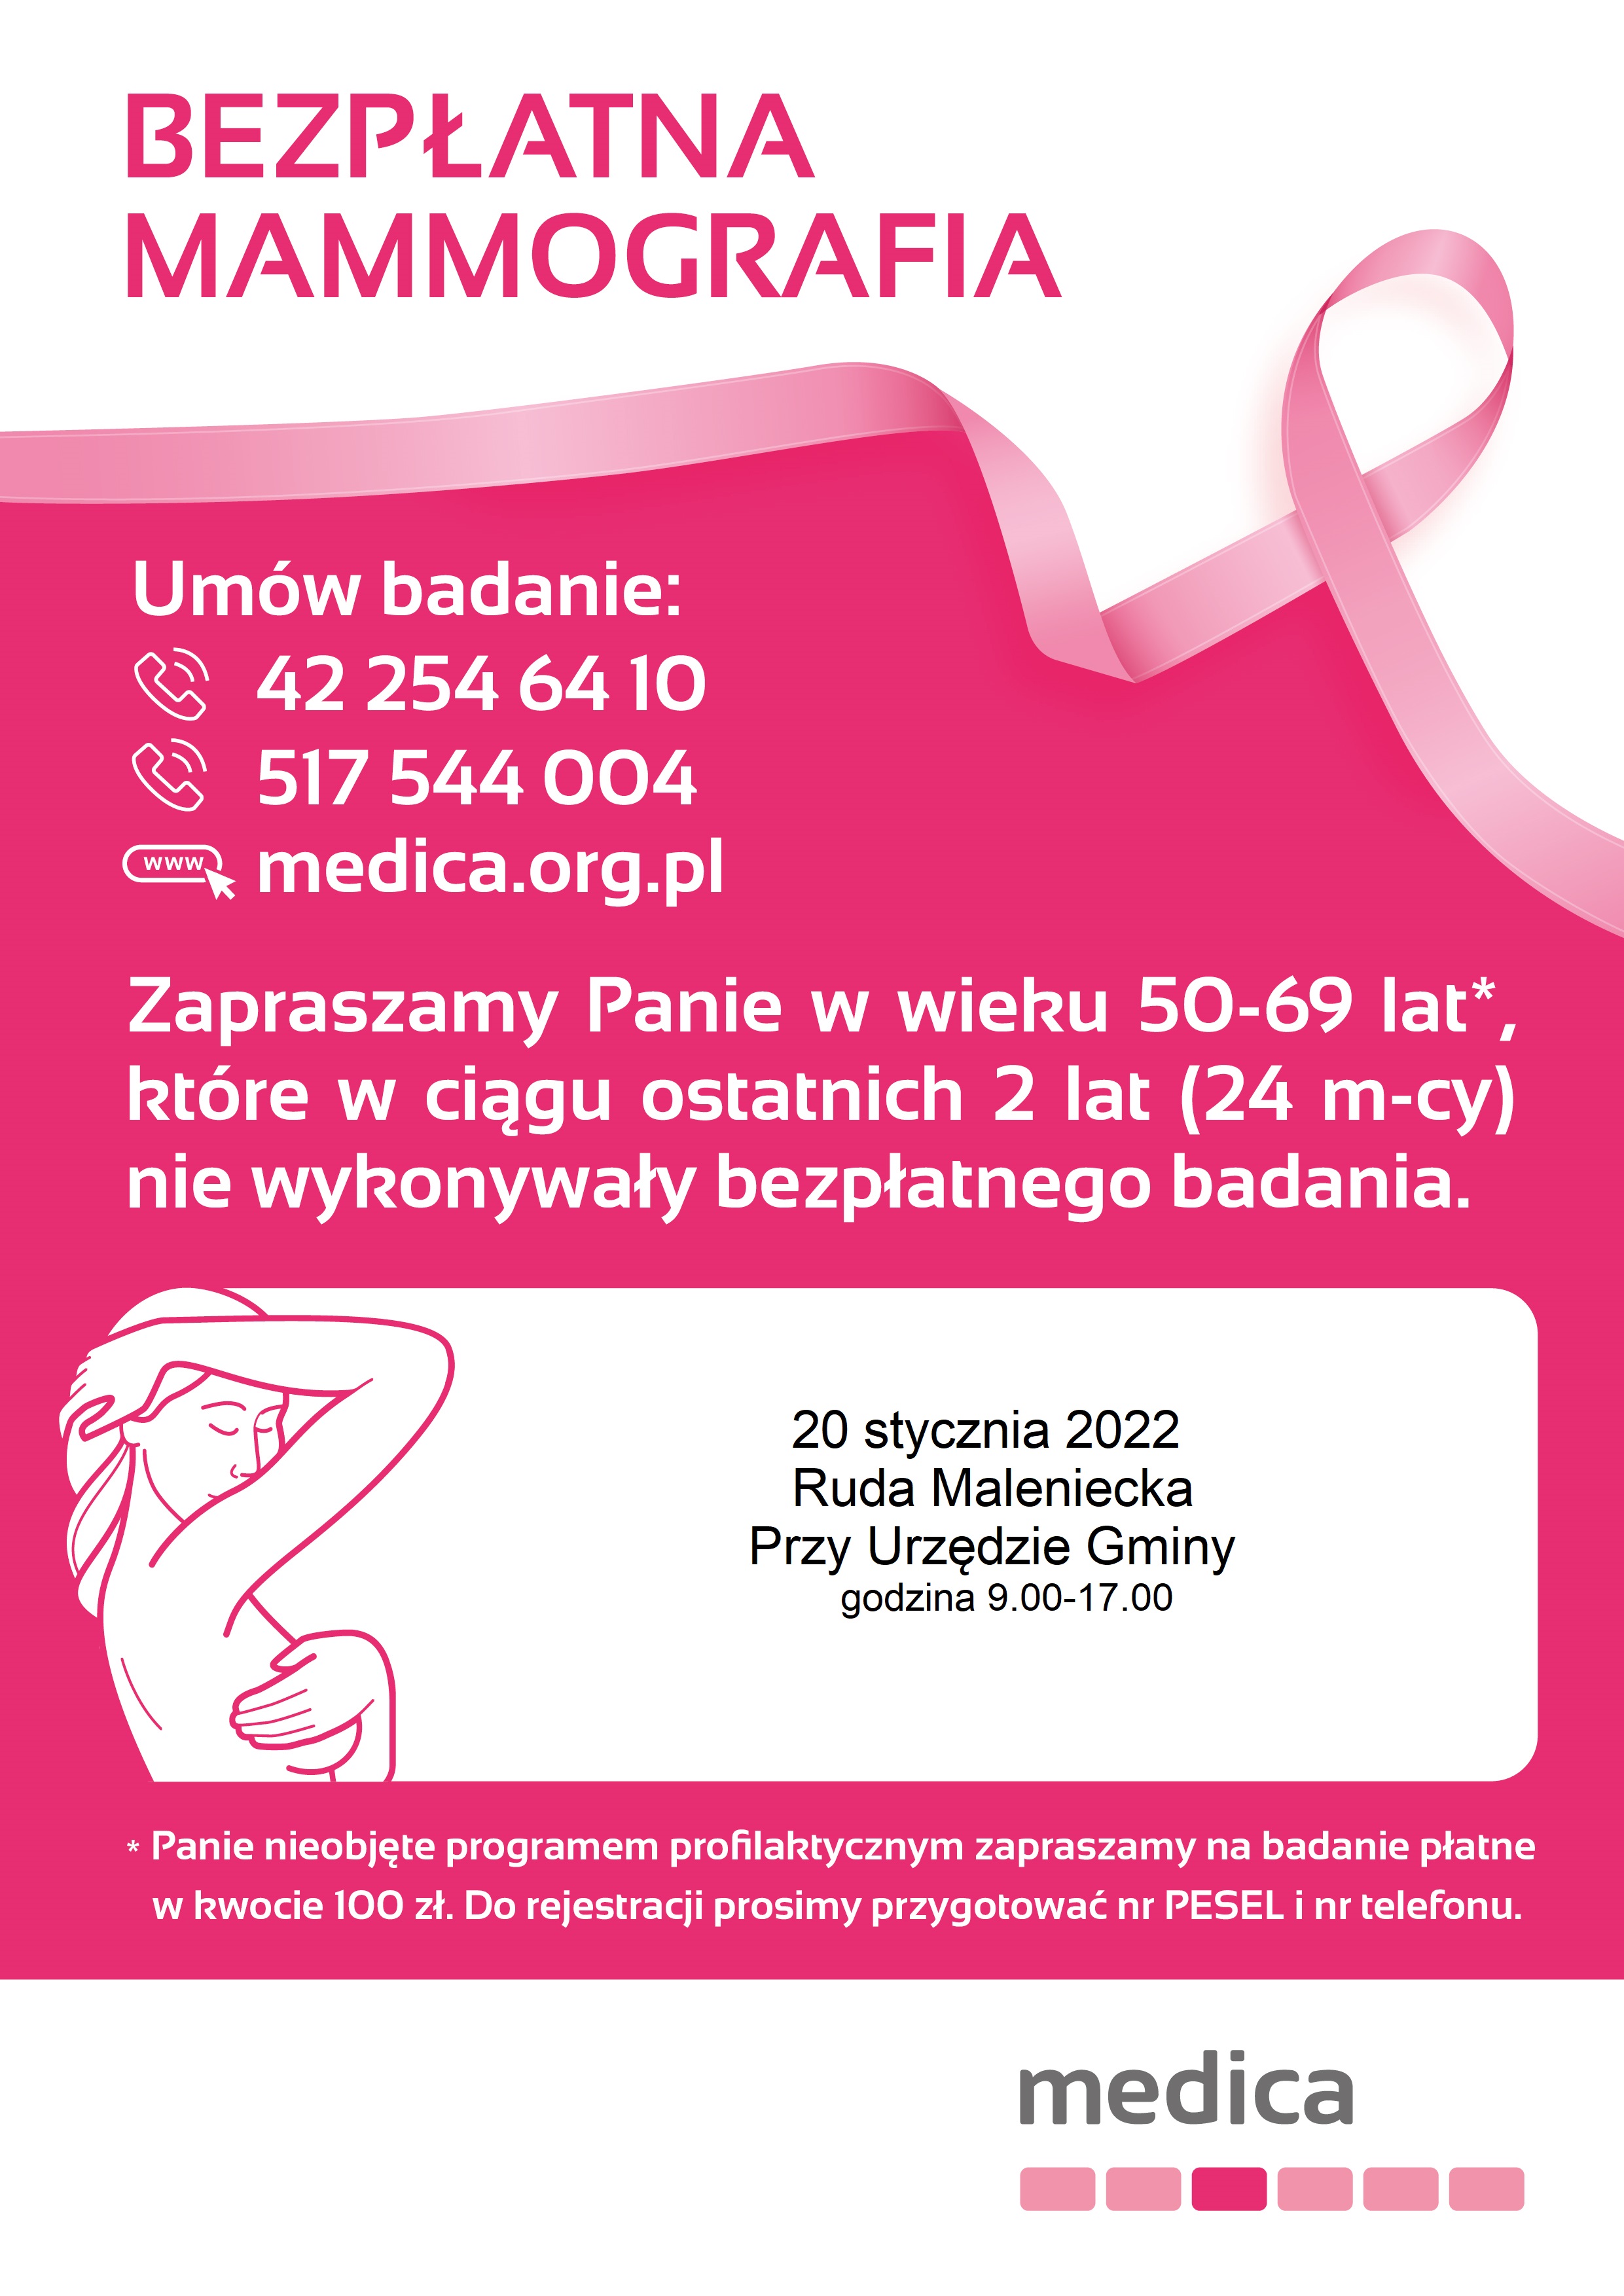 Plakat w kolorze biało-różowym z wypisaną treścią dotyczącą przeprowadzenia bezpłatnej mammografii (termin – 20 stycznia 2022 roku oraz miejsce: parking przed Urzędem Gminy w Rudzie Malenieckiej). Wyszczególnione są także numery telefonów, pod którymi można umówić się na badanie (422546410 lub 517544004) oraz informacja dla Pań odnośnie wieku i czasu umożliwiającego do skorzystania z bezpłatnego badania mammograficznego. Z badania mogą skorzystać kobiety w wieku 50-69 lat, które w ciągu ostatnich 2 lat nie wykonywały bezpłatnego badania. Panie, które nie zostały objęte programem mogą skorzystać z badania w kwocie 100 zł. Do rejestracji potrzebne będzie przygotowanie numeru PESEL oraz numeru telefonu.